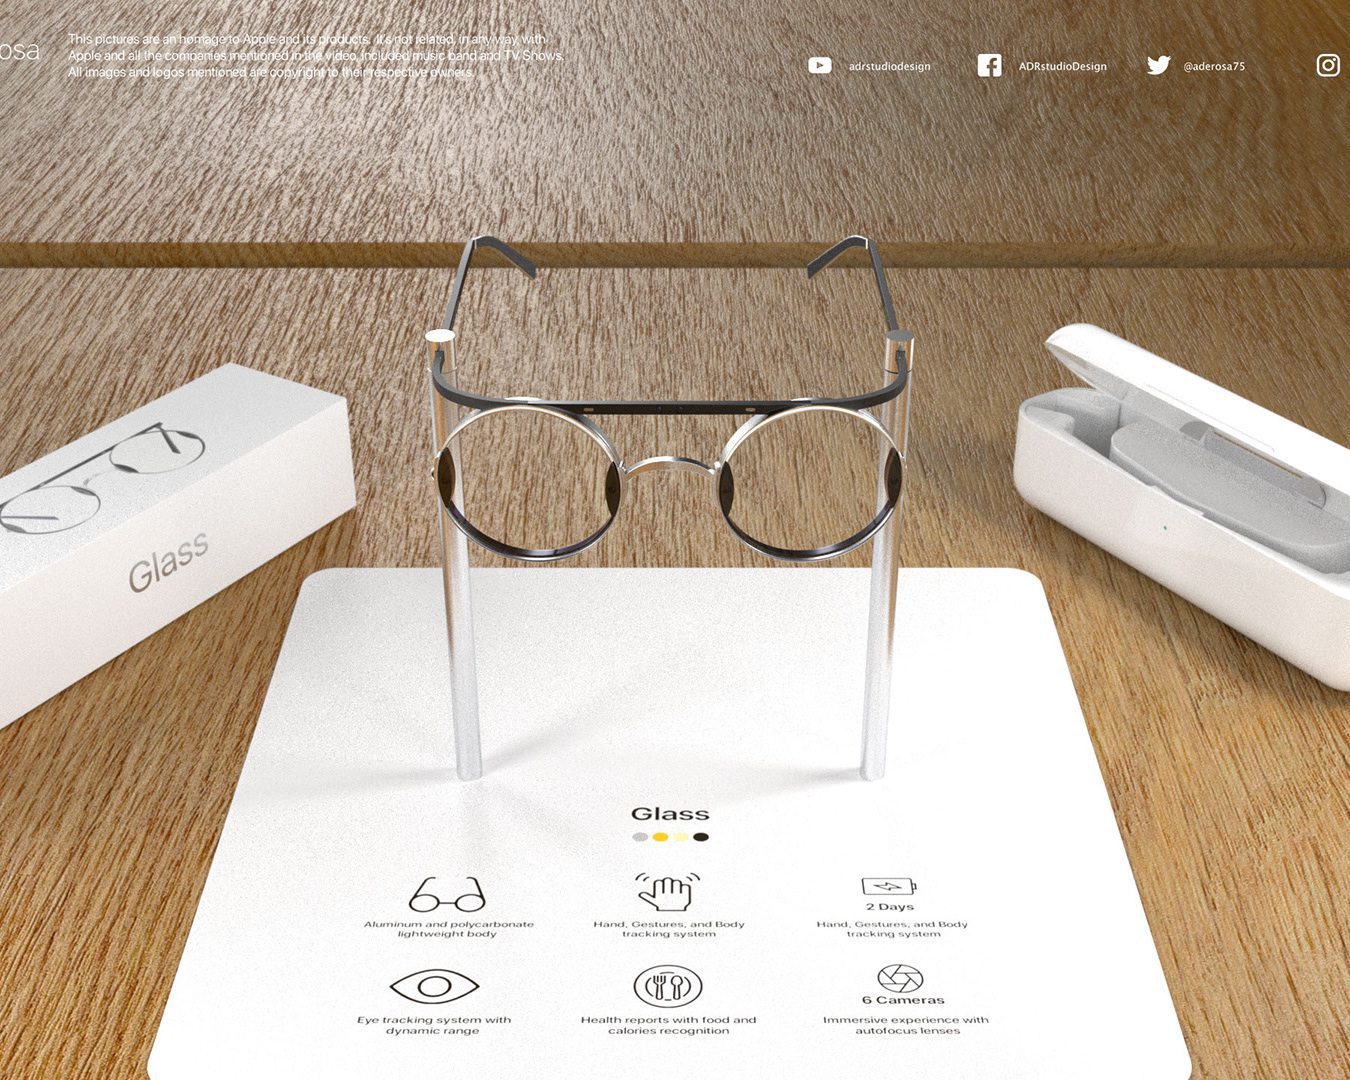 Pokiaľ by sa Apple Glasses dostali do Apple Store, vystavované by mohli byť presne takto (foto: Antonio De Rosa)